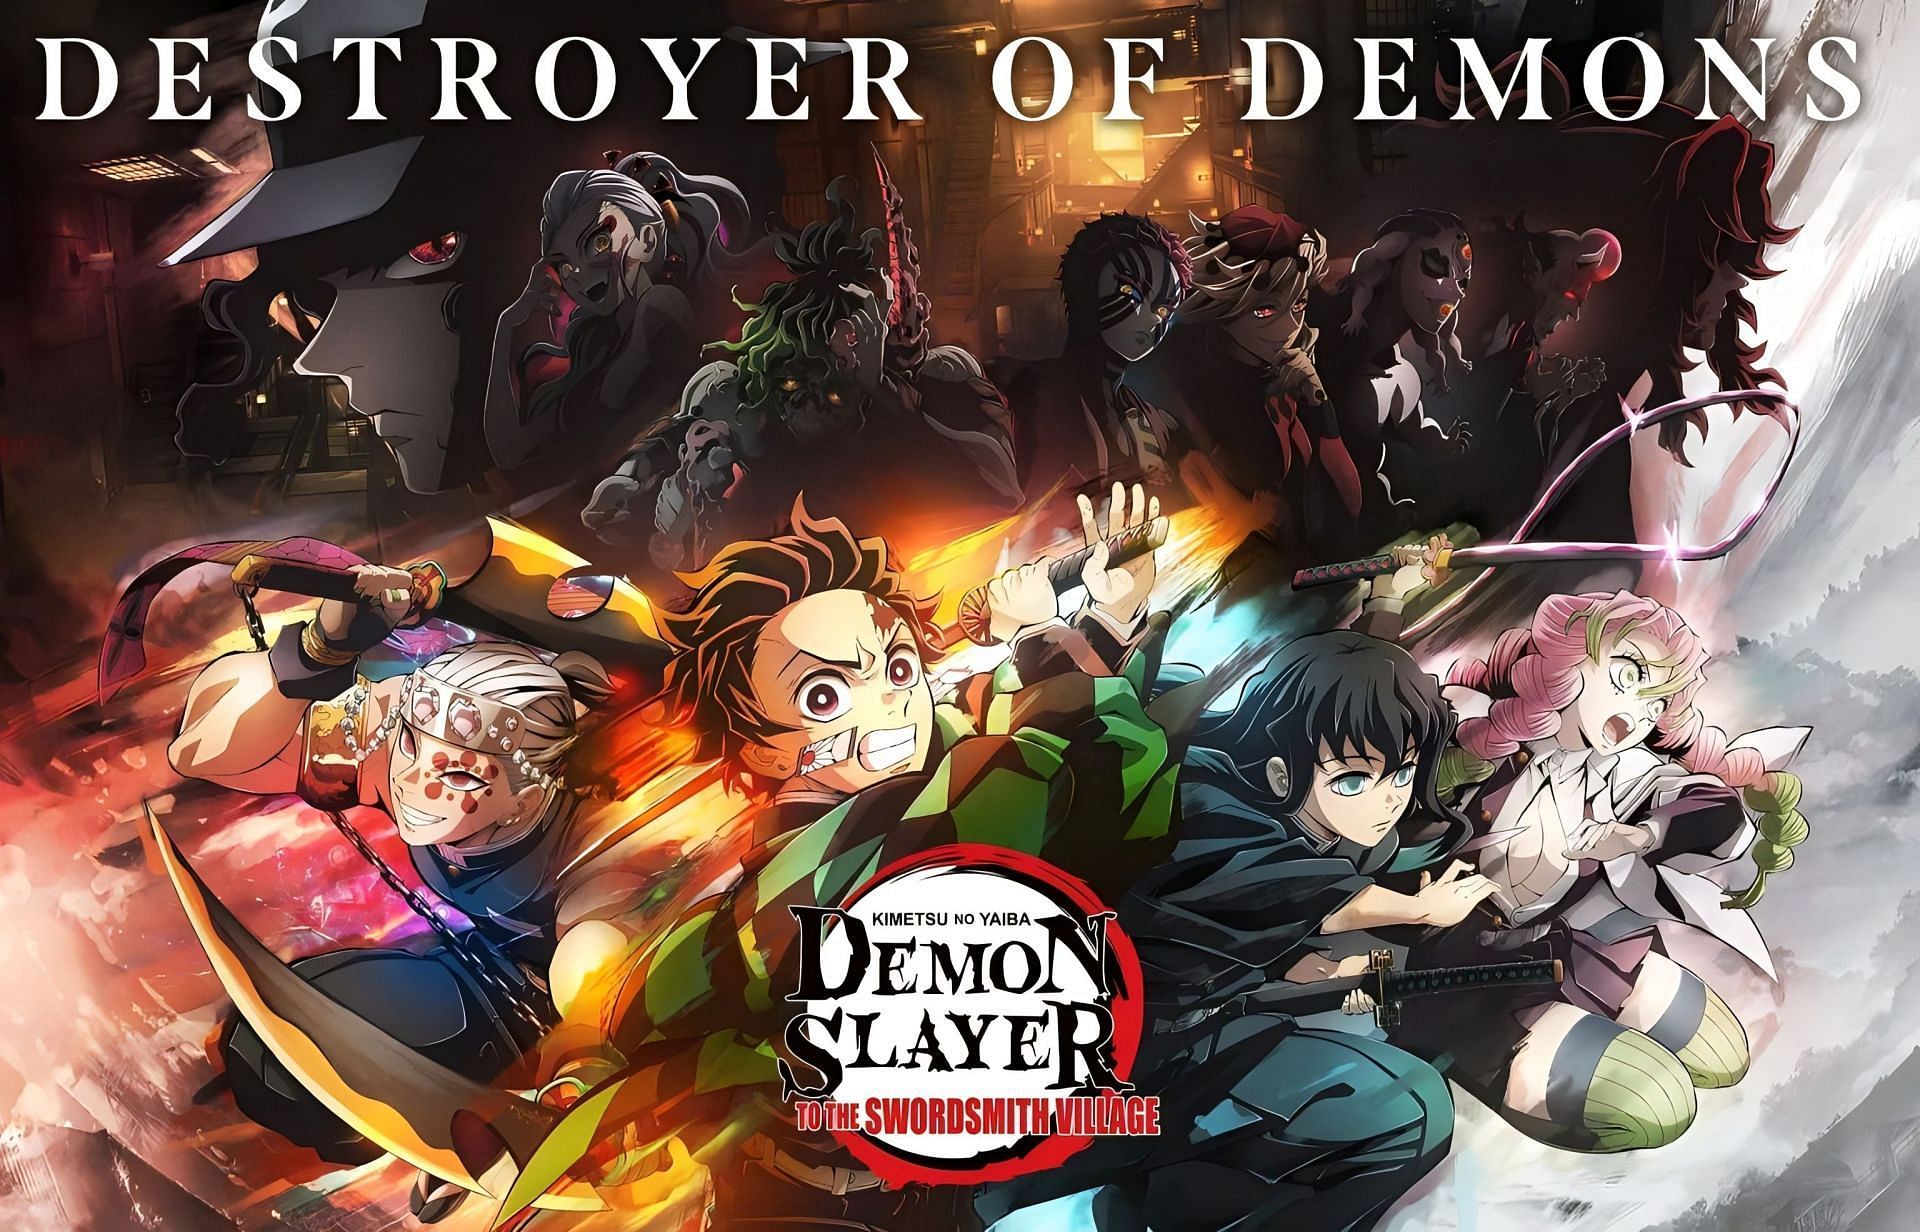 Demon Slayer: Swordsmith Village Arc Episode 1 - A Strong Entrance Into a  New Adventure - Anime Corner